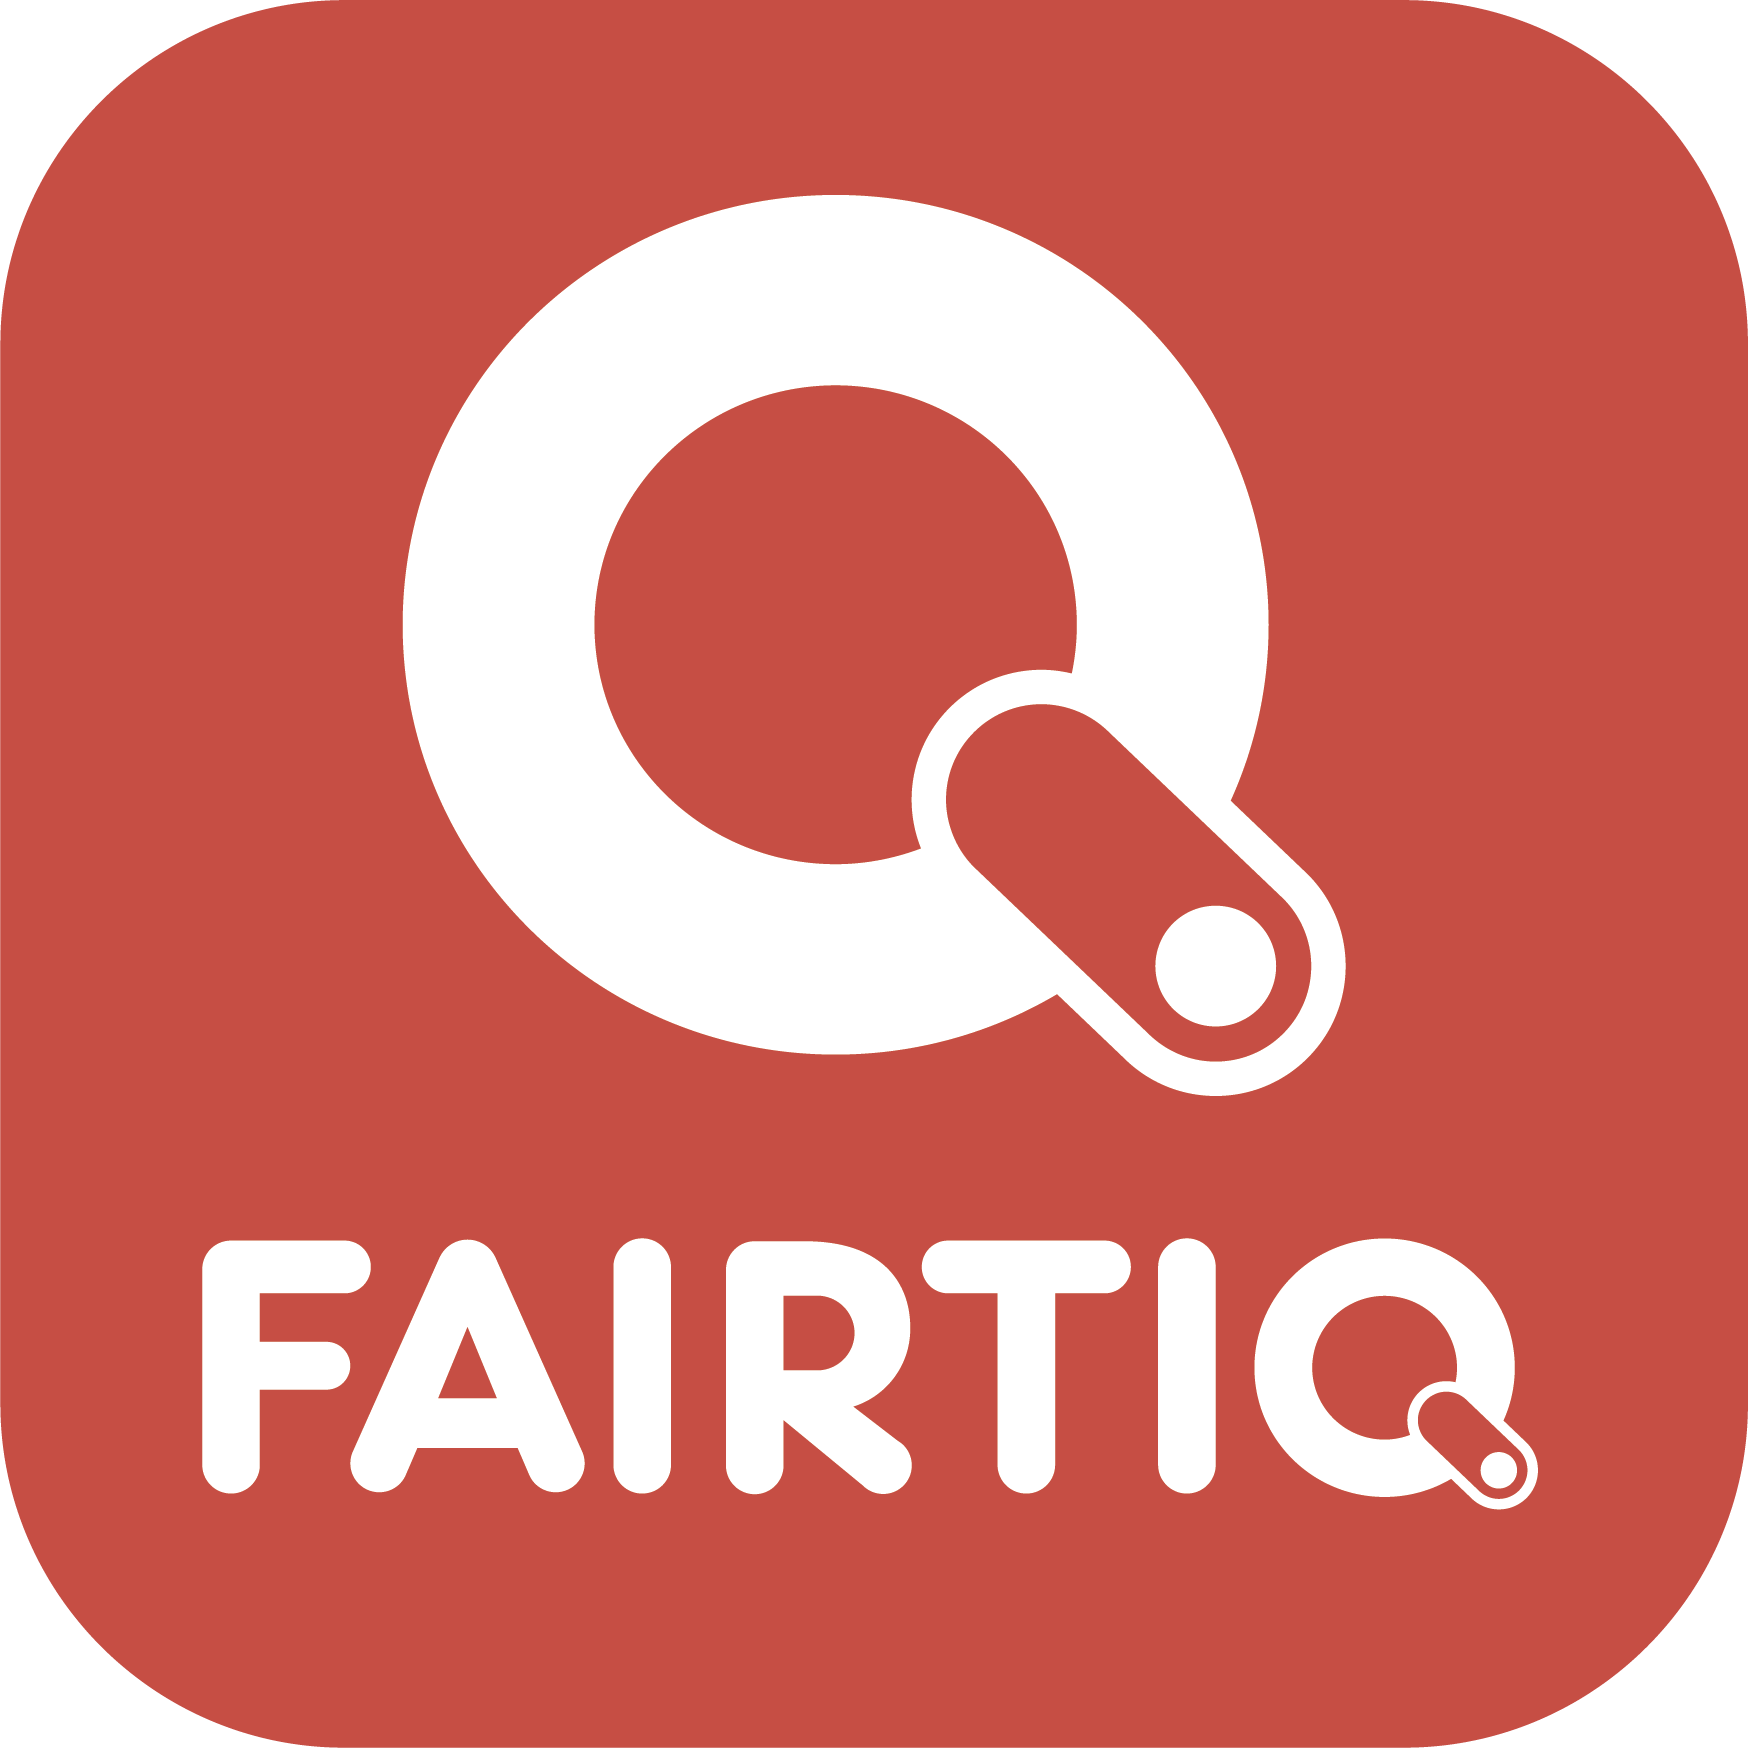 fairtiq-01.png